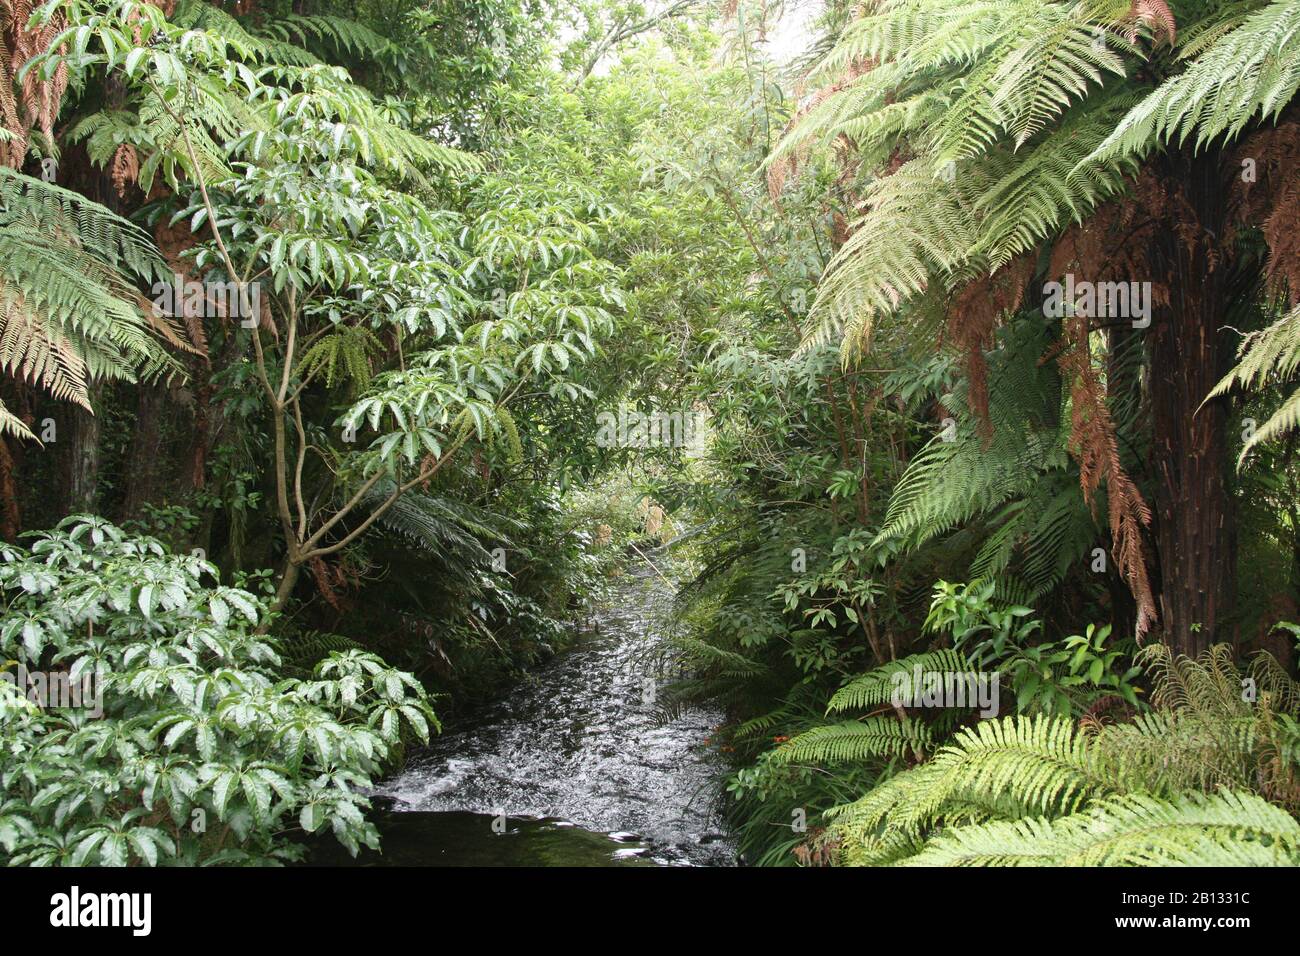 nature and the world around new Zealand Stock Photo